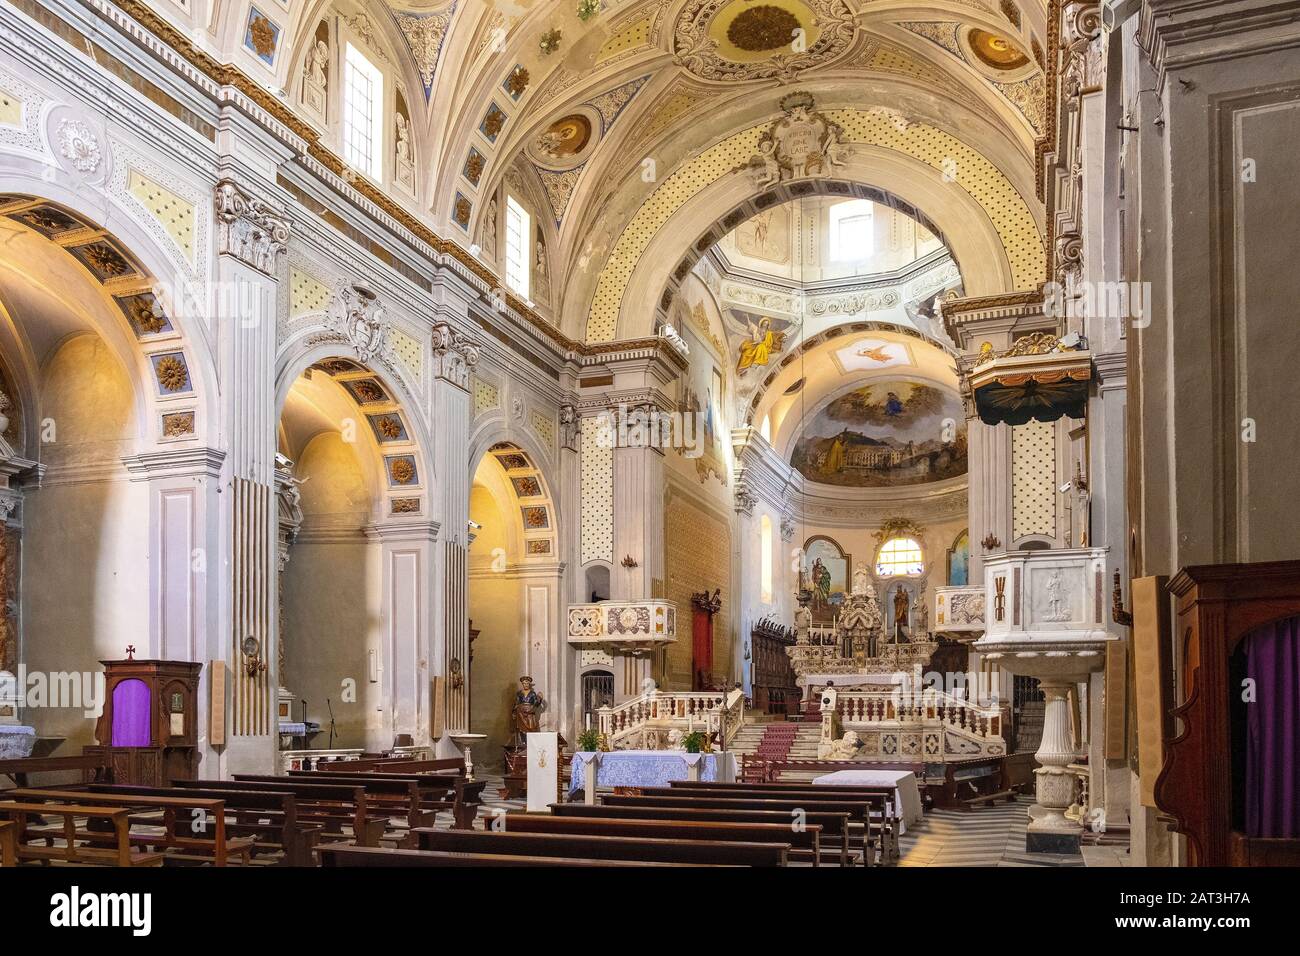 Bosa, Sardinien/Italien - 2018/08/13: Innenraum der Kathedrale Duomo di Bosa Bosa - An der Piazza Duomo durch den Fluss Temo Damm Stockfoto